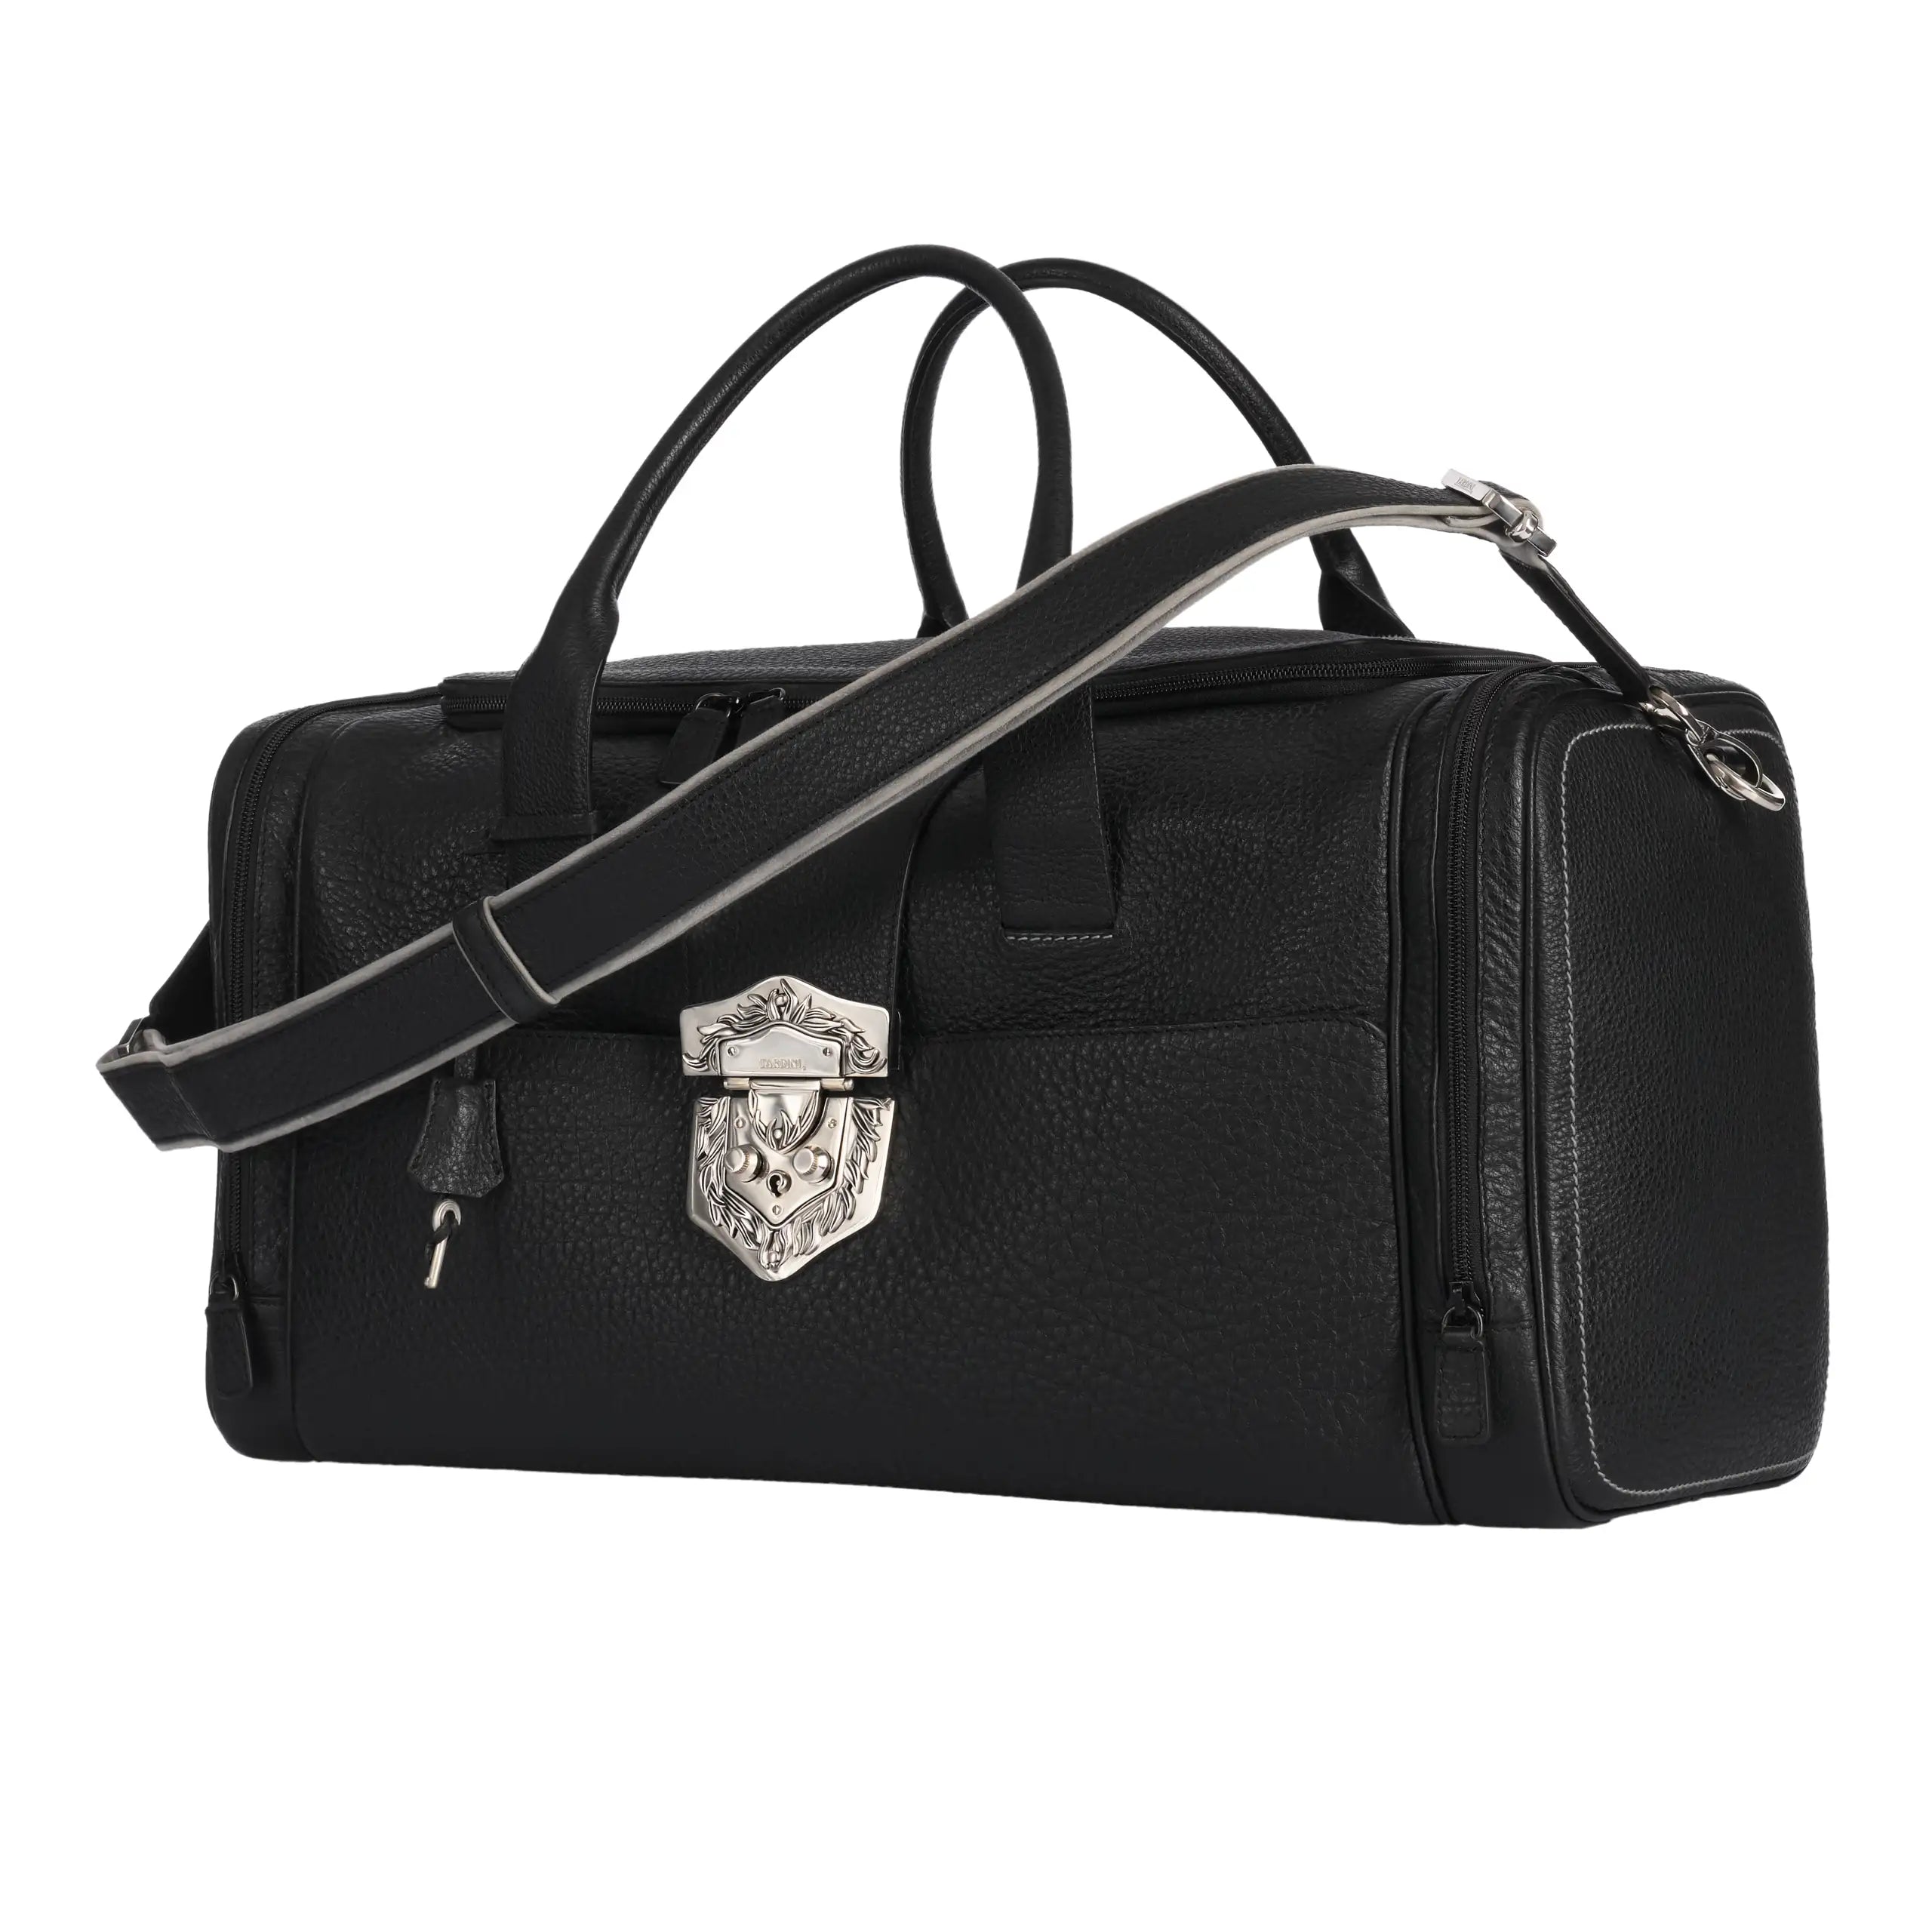 Reisetasche aus Glattleder in Schwarz